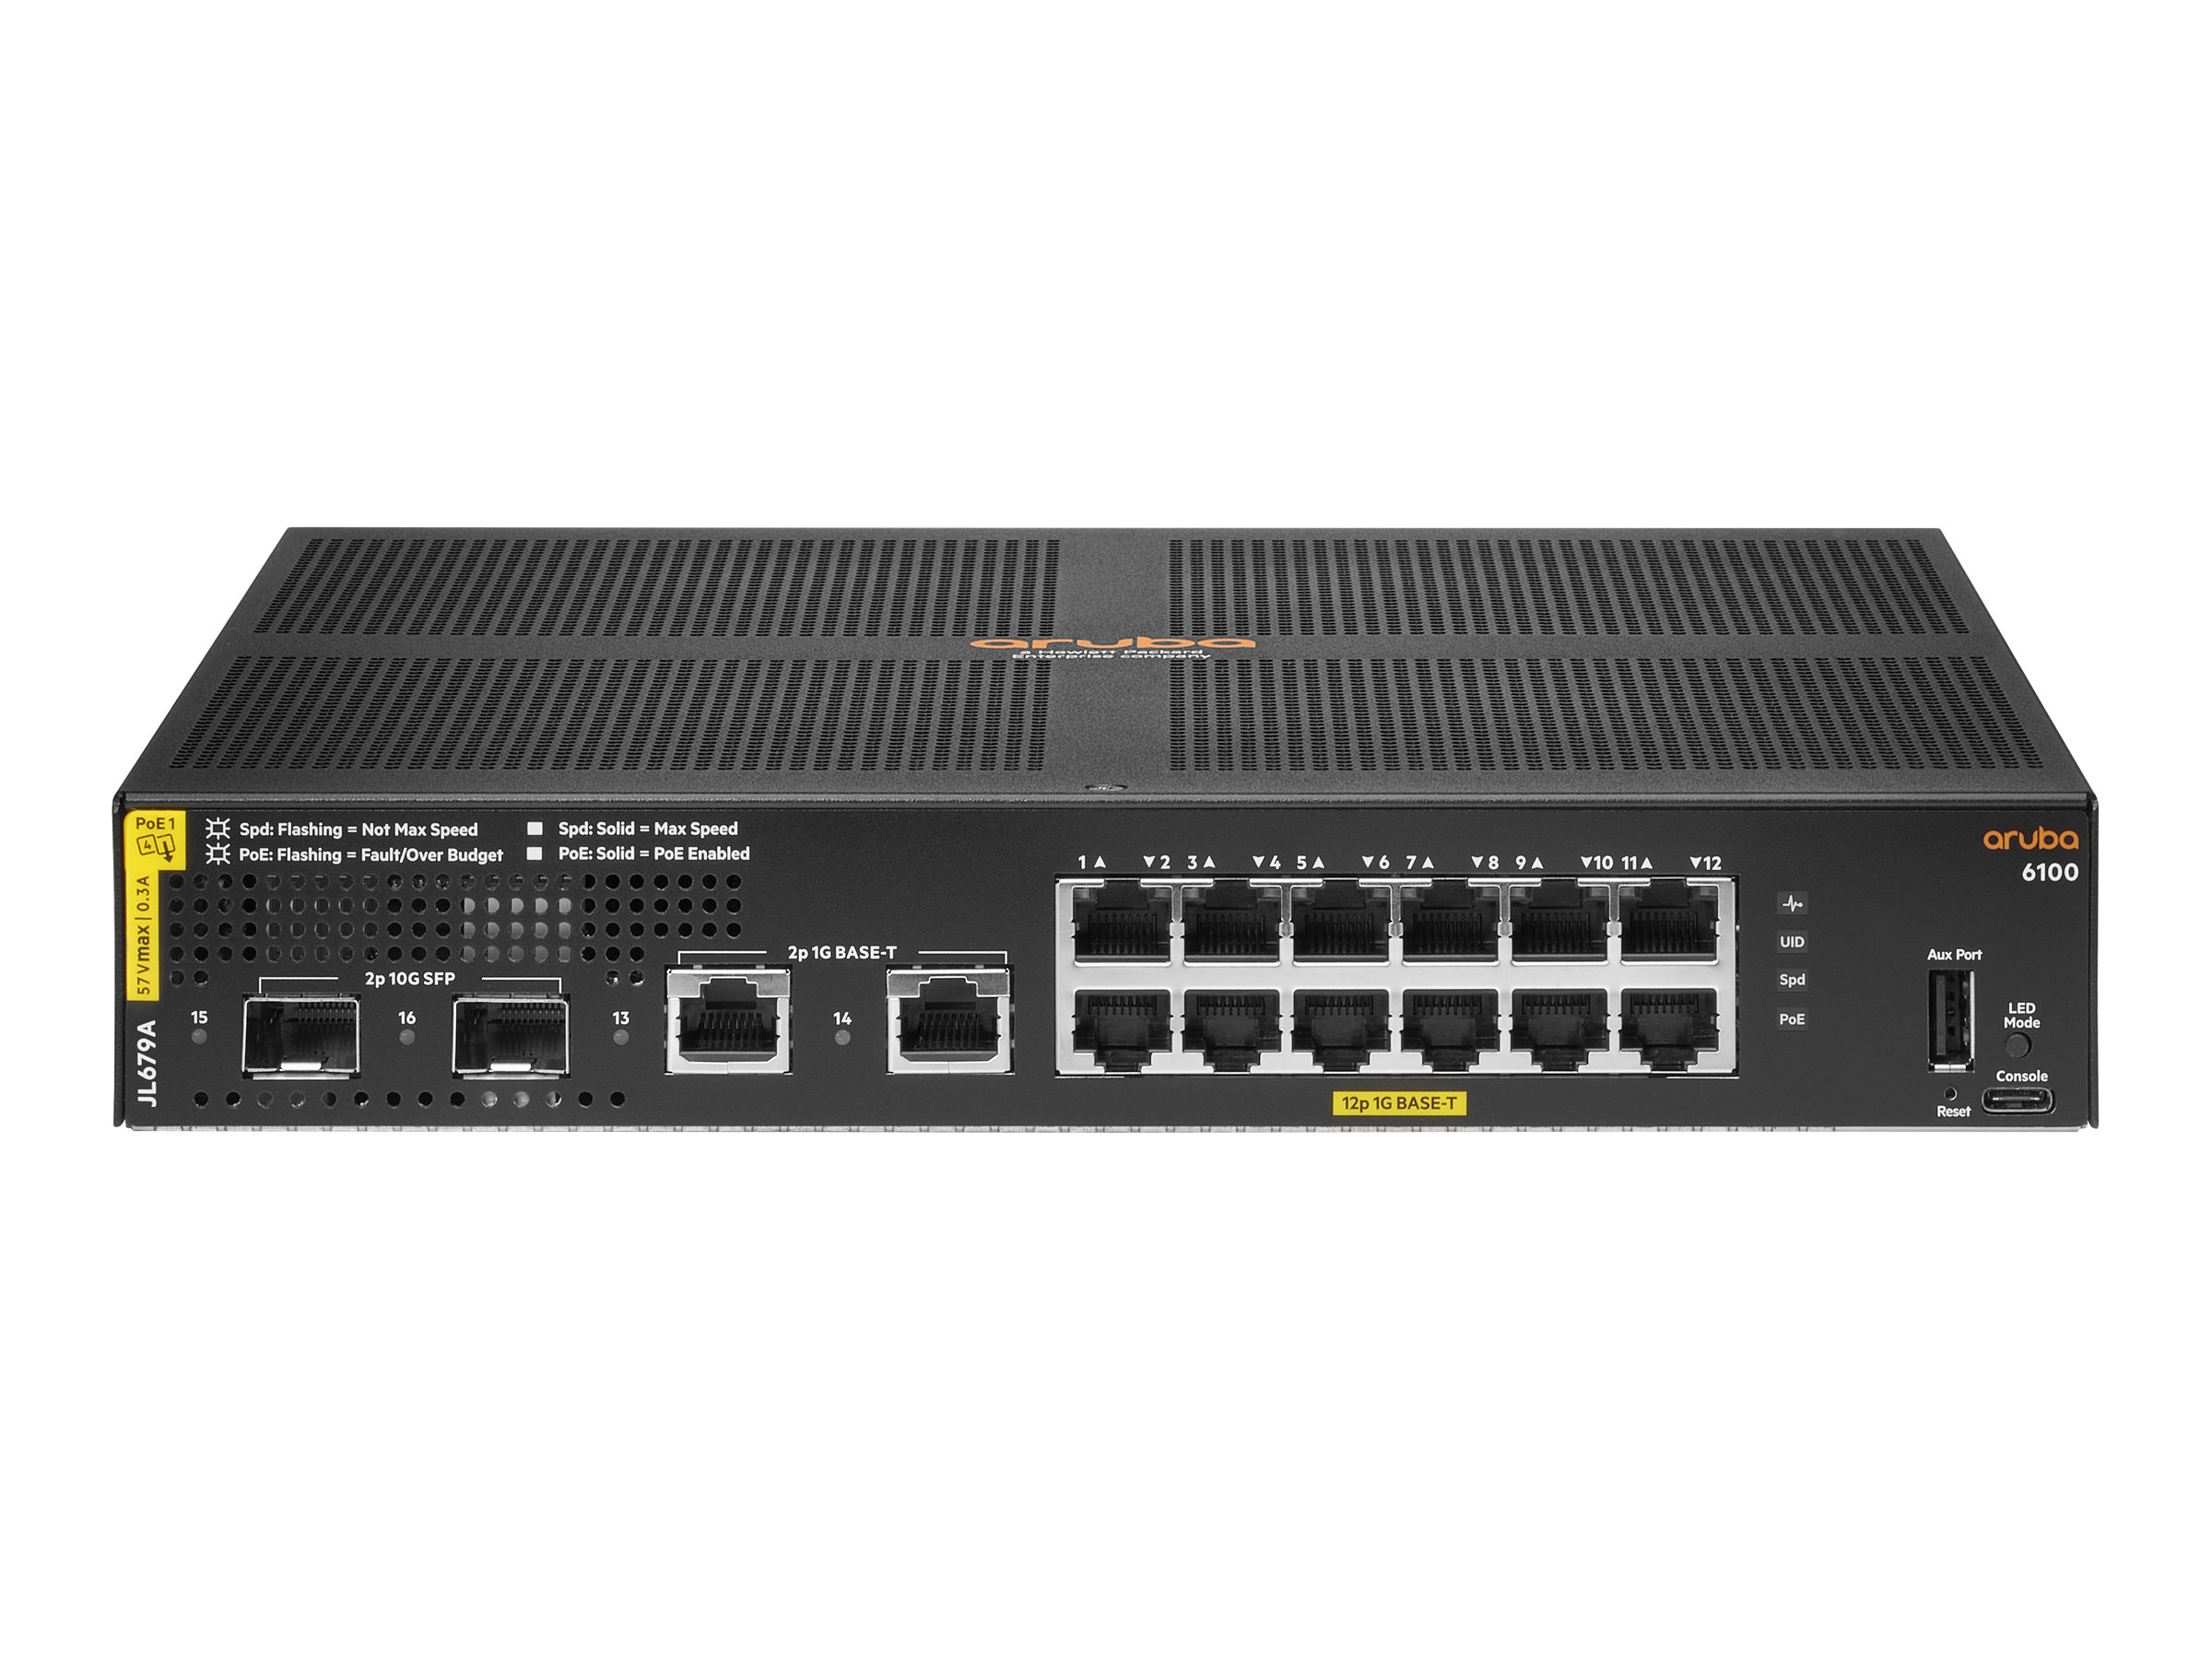 HPE Aruba 6100 12G Class4 PoE 2G/2SFP+ 139W Switch - Switch - managed - 12 x 10/100/1000 (PoE+) + 2 x 1 Gigabit / 10 Gigabit SFP